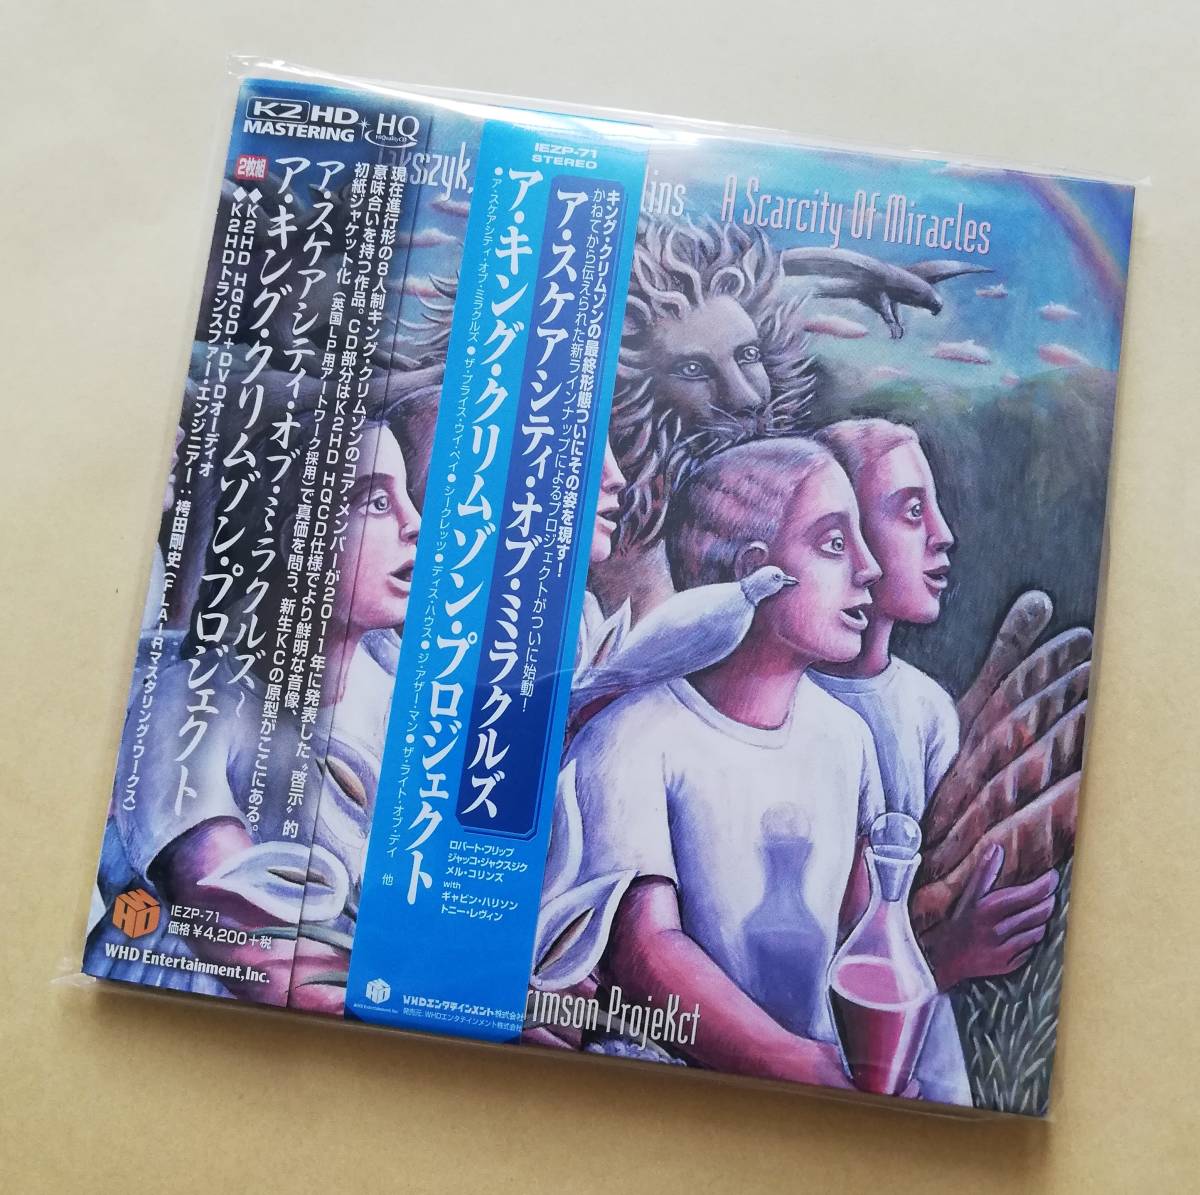 【新品未開封】 ア・キング・クリムゾン・プロジェクト / ア・スケシティ・オブ・ミラクル［K2HD HQCD+DVD-AUDIO］ 紙ジャケ King Crimson